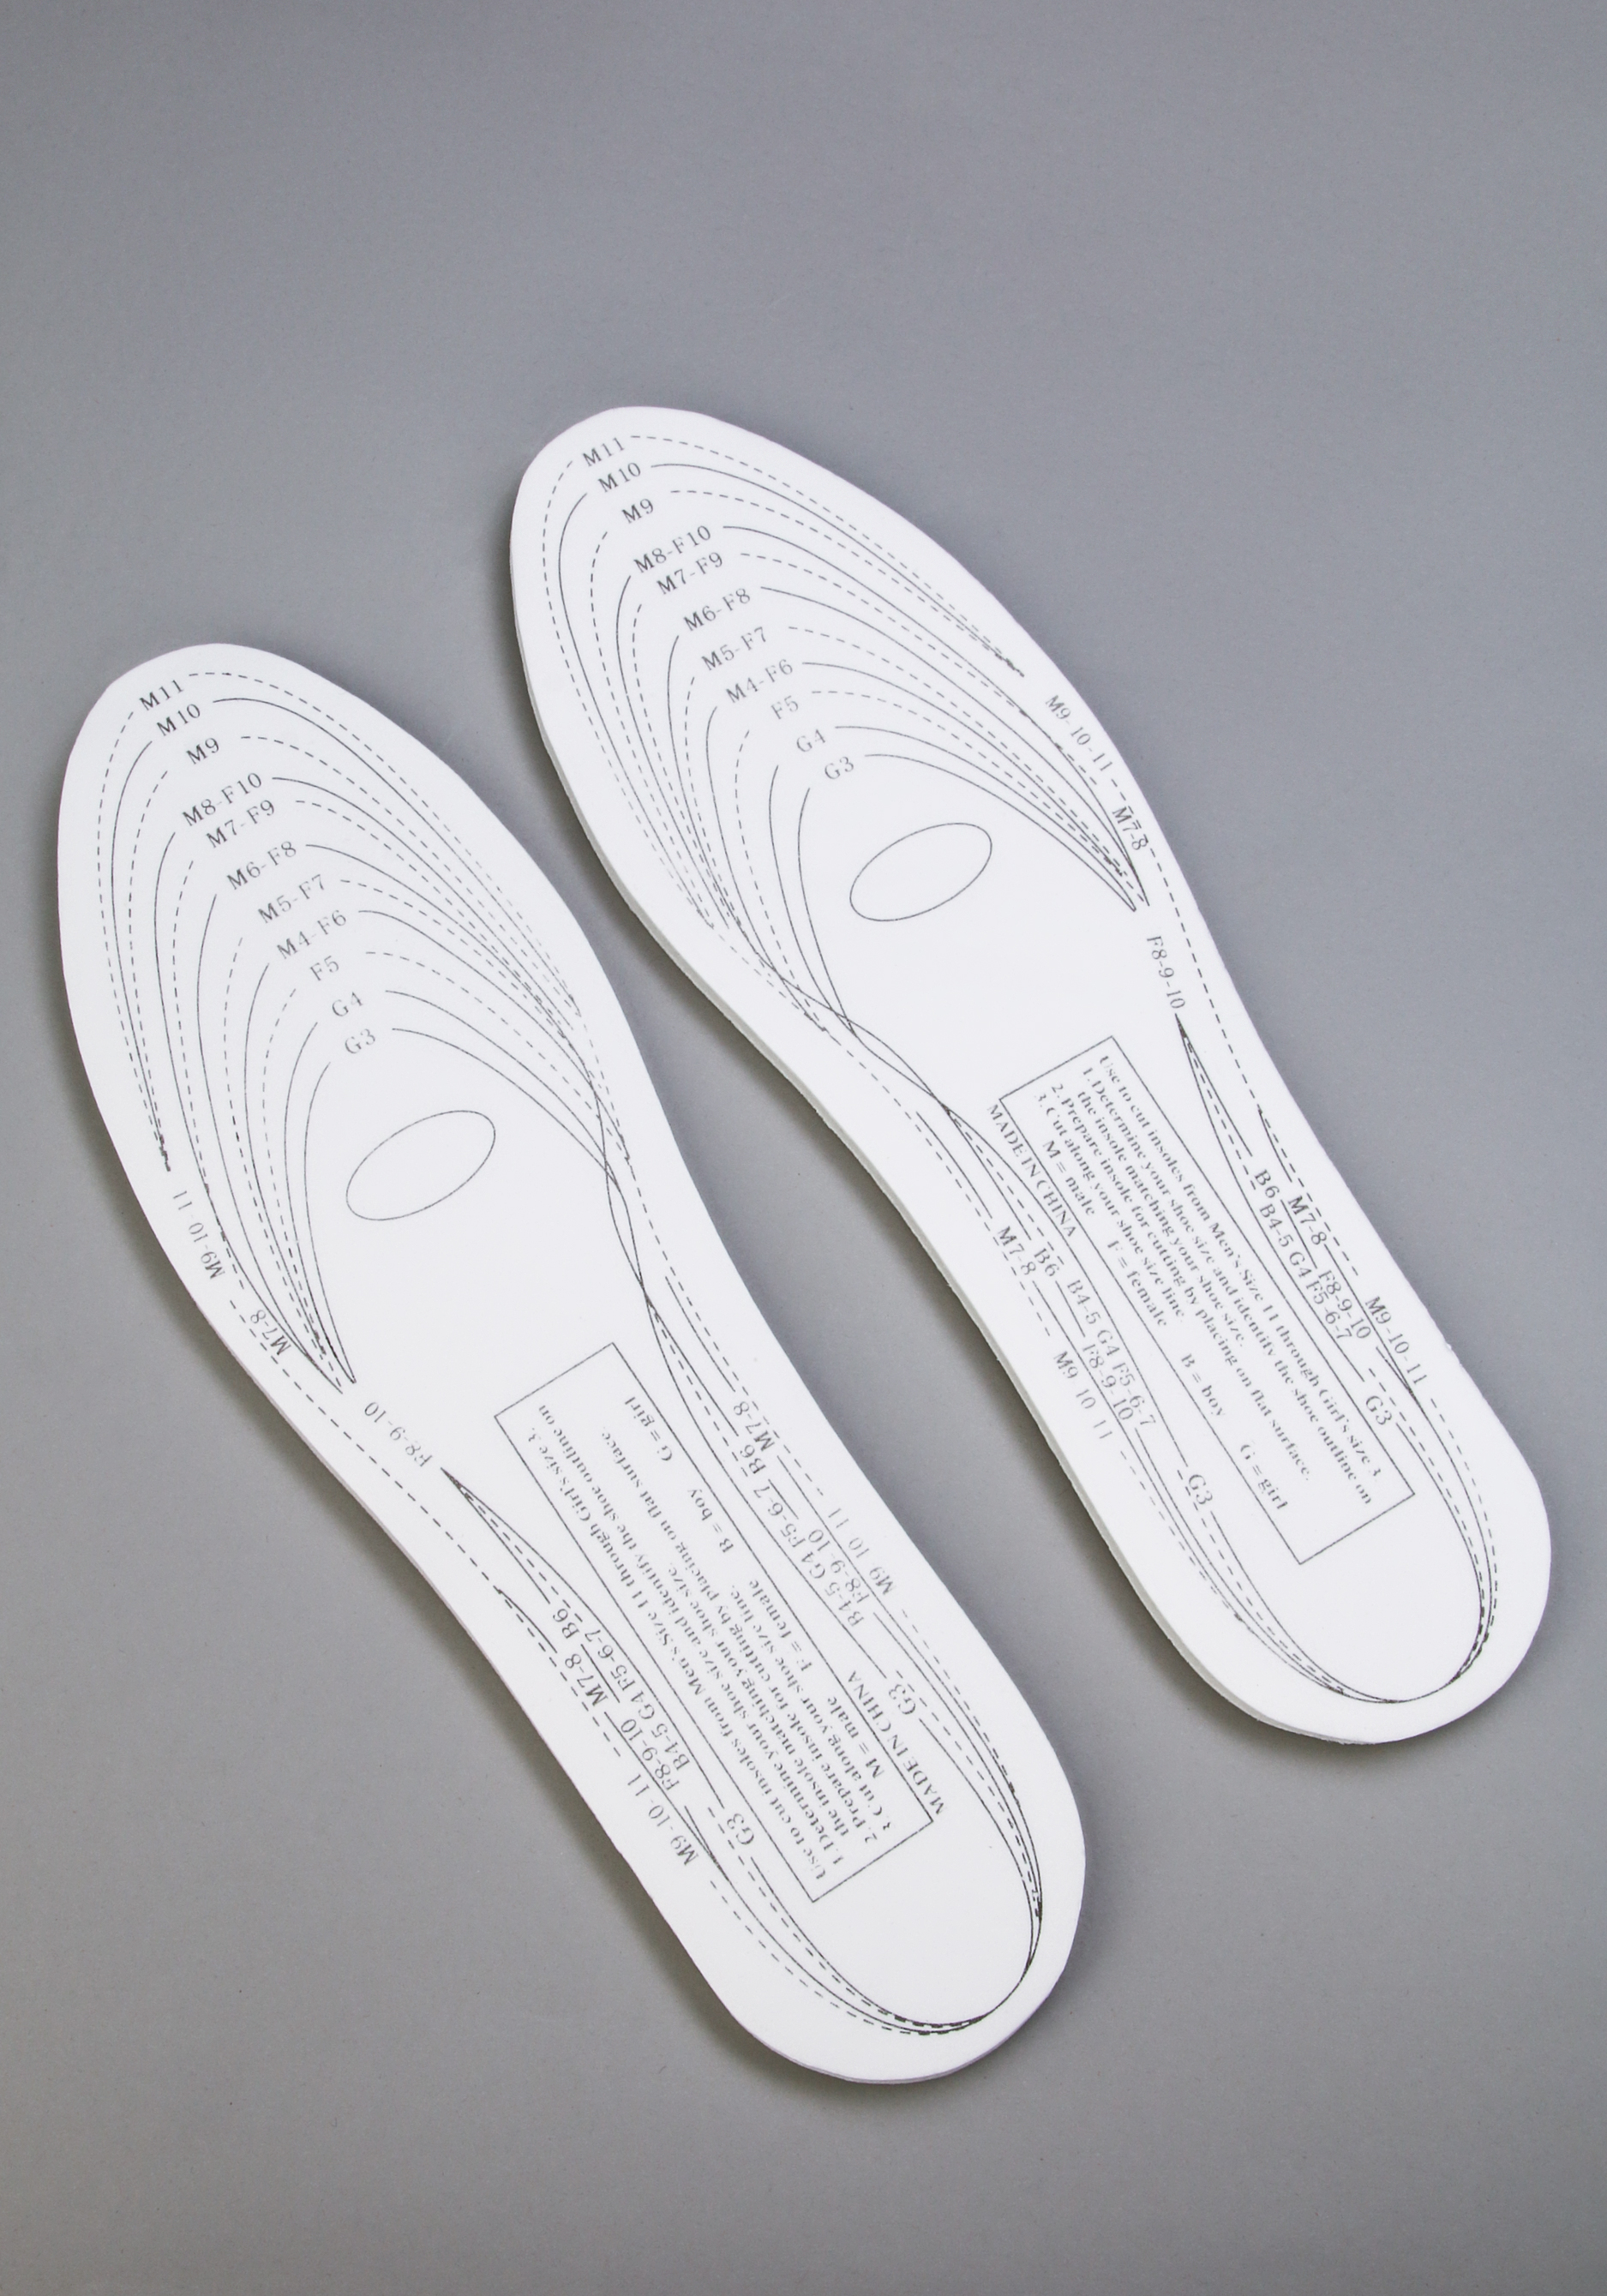 Стельки для обуви с эффектом памяти, 2 пары Bradex, цвет белый, размер универсальный - фото 1